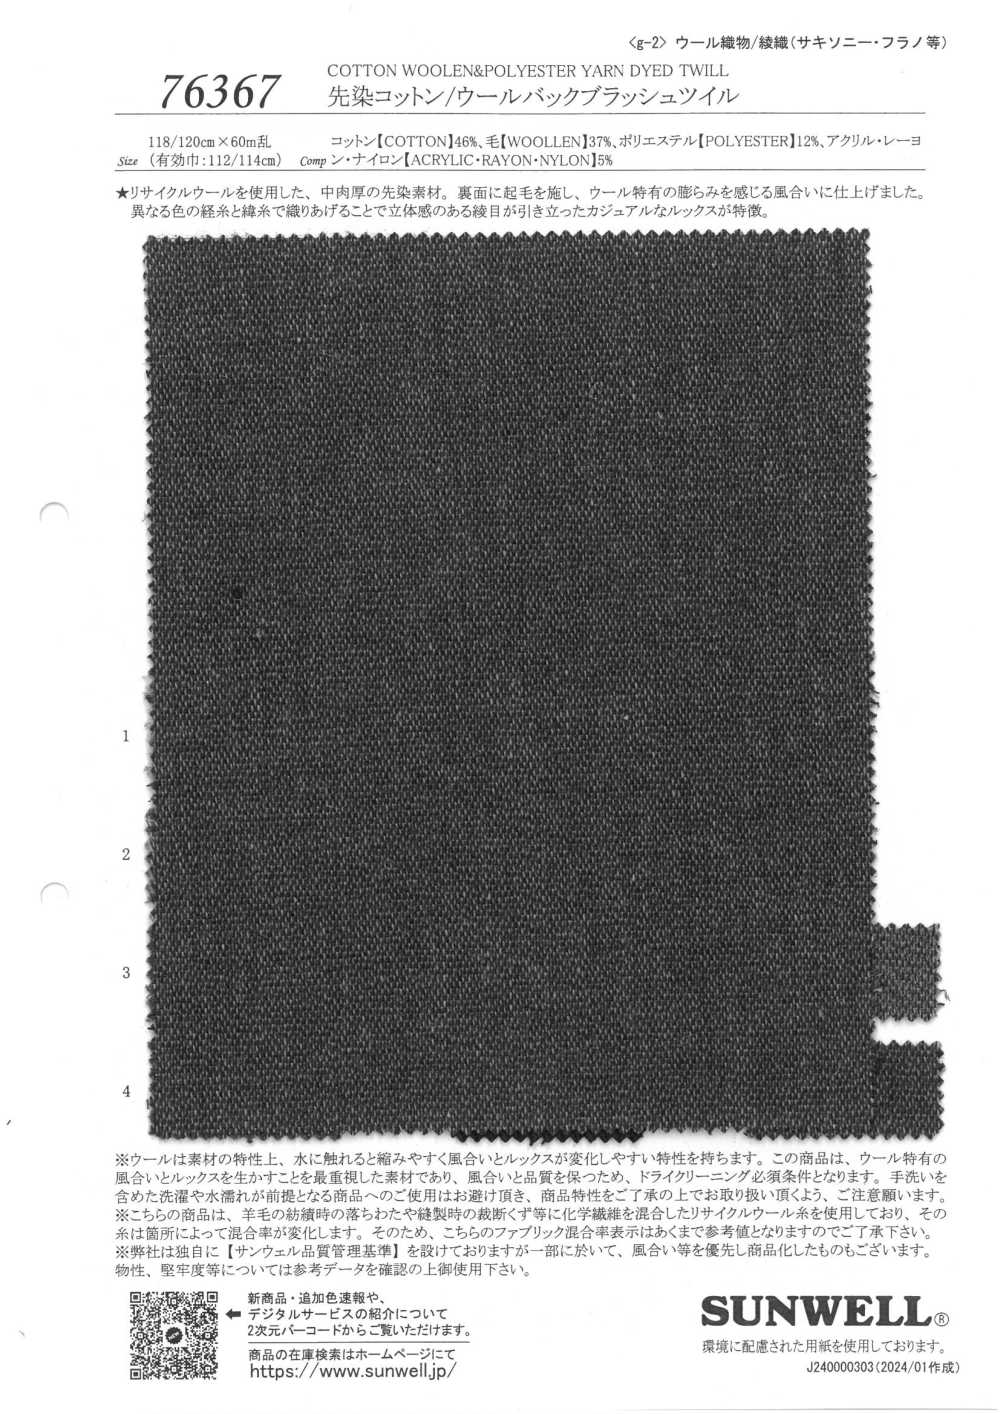 76367 Garngefärbter Gebürsteter Twill Aus Baumwolle/Wolle Mit Rückseite[Textilgewebe] SUNWELL